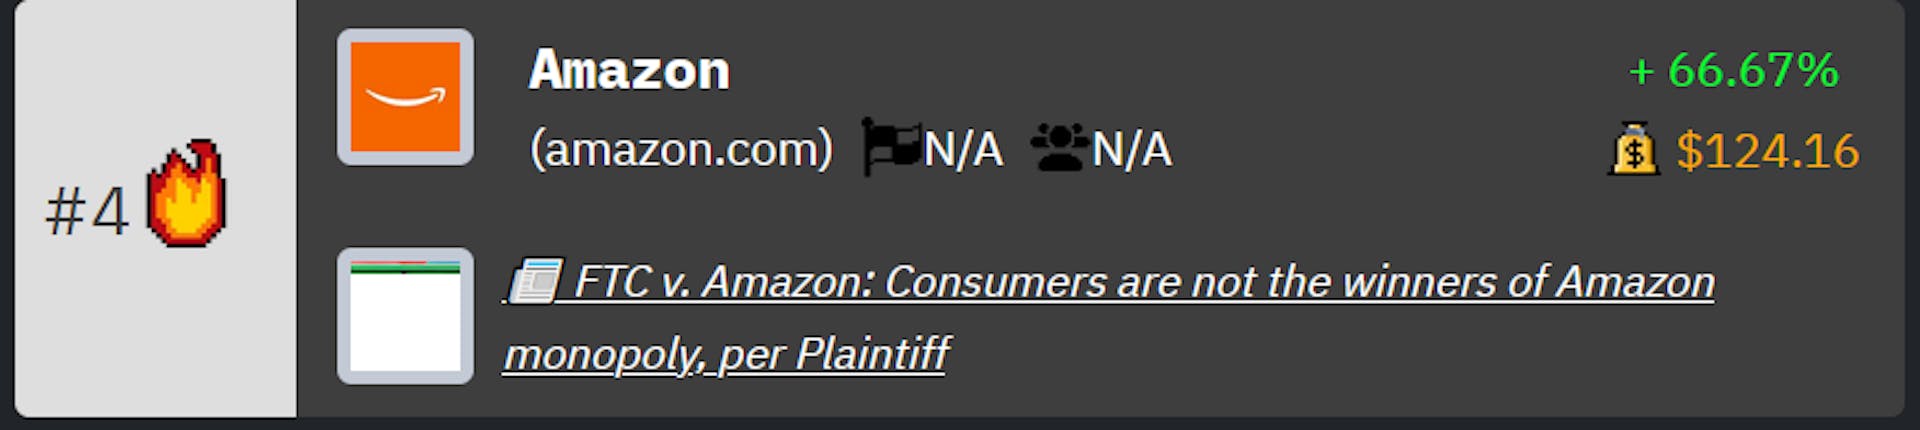 Amazon-Ranking im Tech-Unternehmensranking von HackerNoon